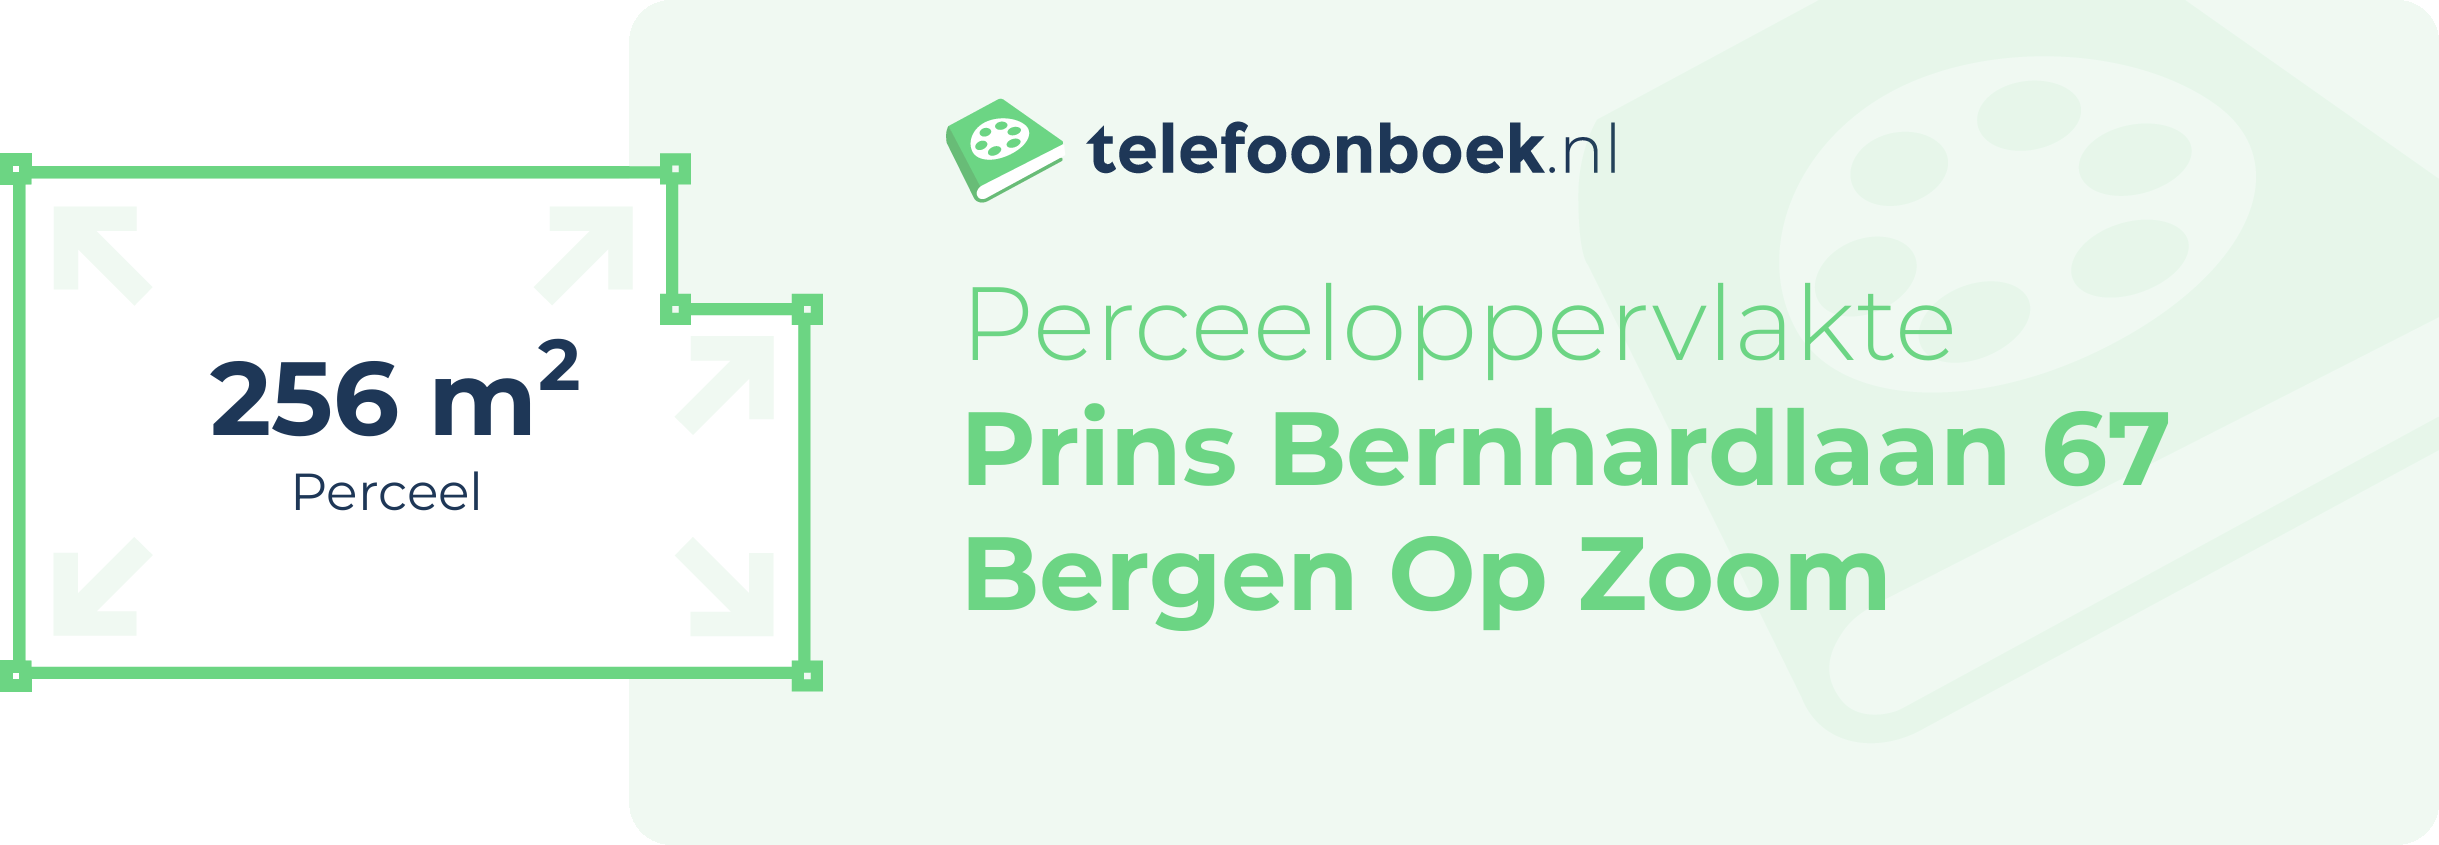 Perceeloppervlakte Prins Bernhardlaan 67 Bergen Op Zoom